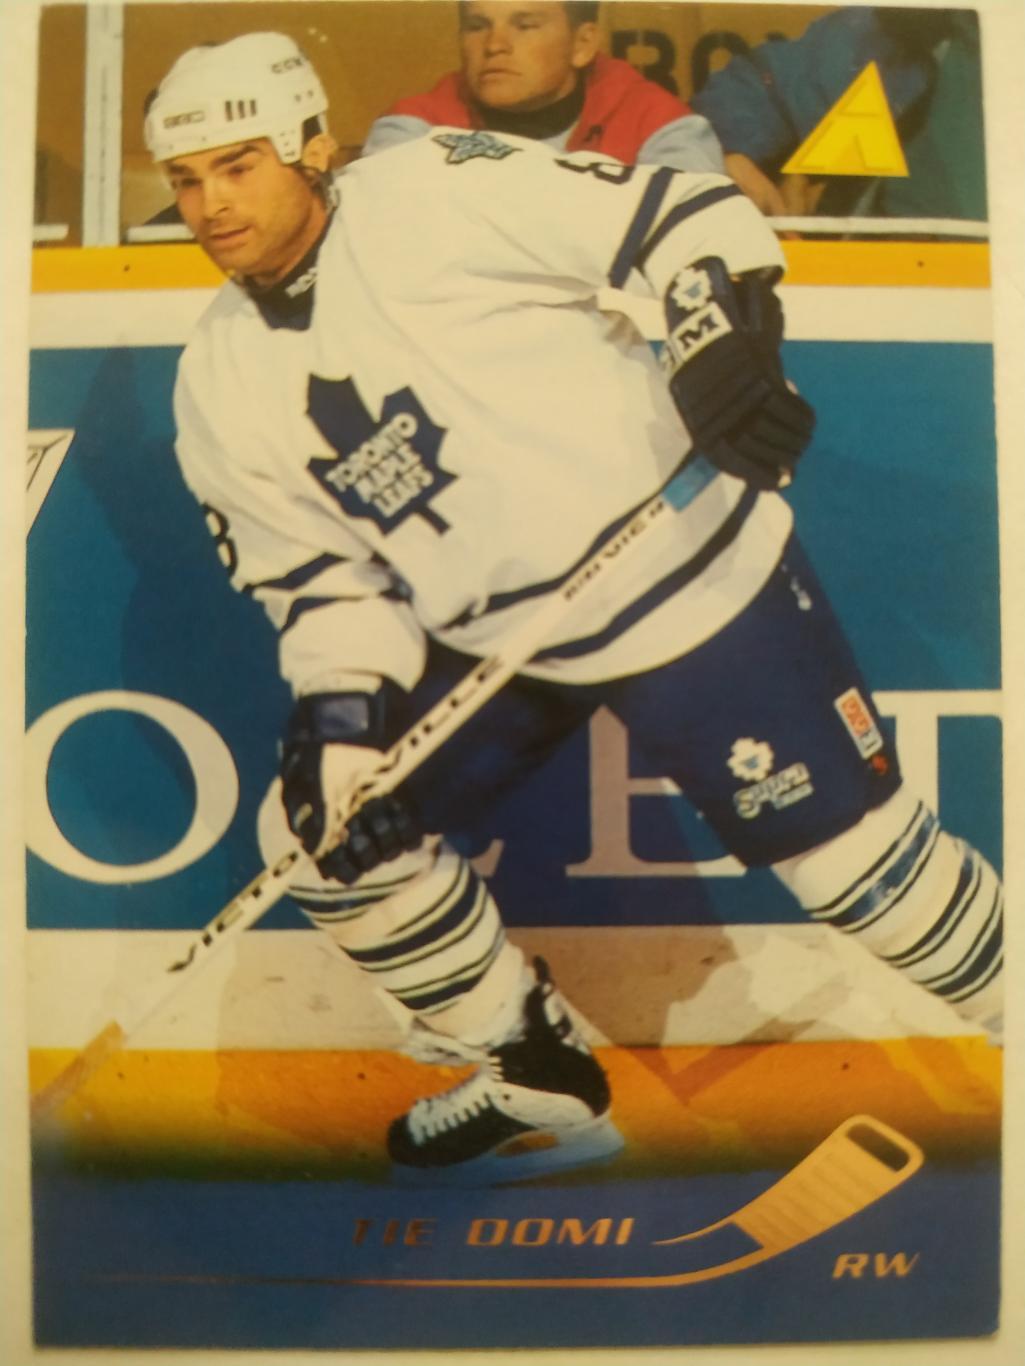 ХОККЕЙ КАРТОЧКА НХЛ PINNACLE 1995-96 NHL TIE DOMI TORONTO MAPLE LEAFS #159